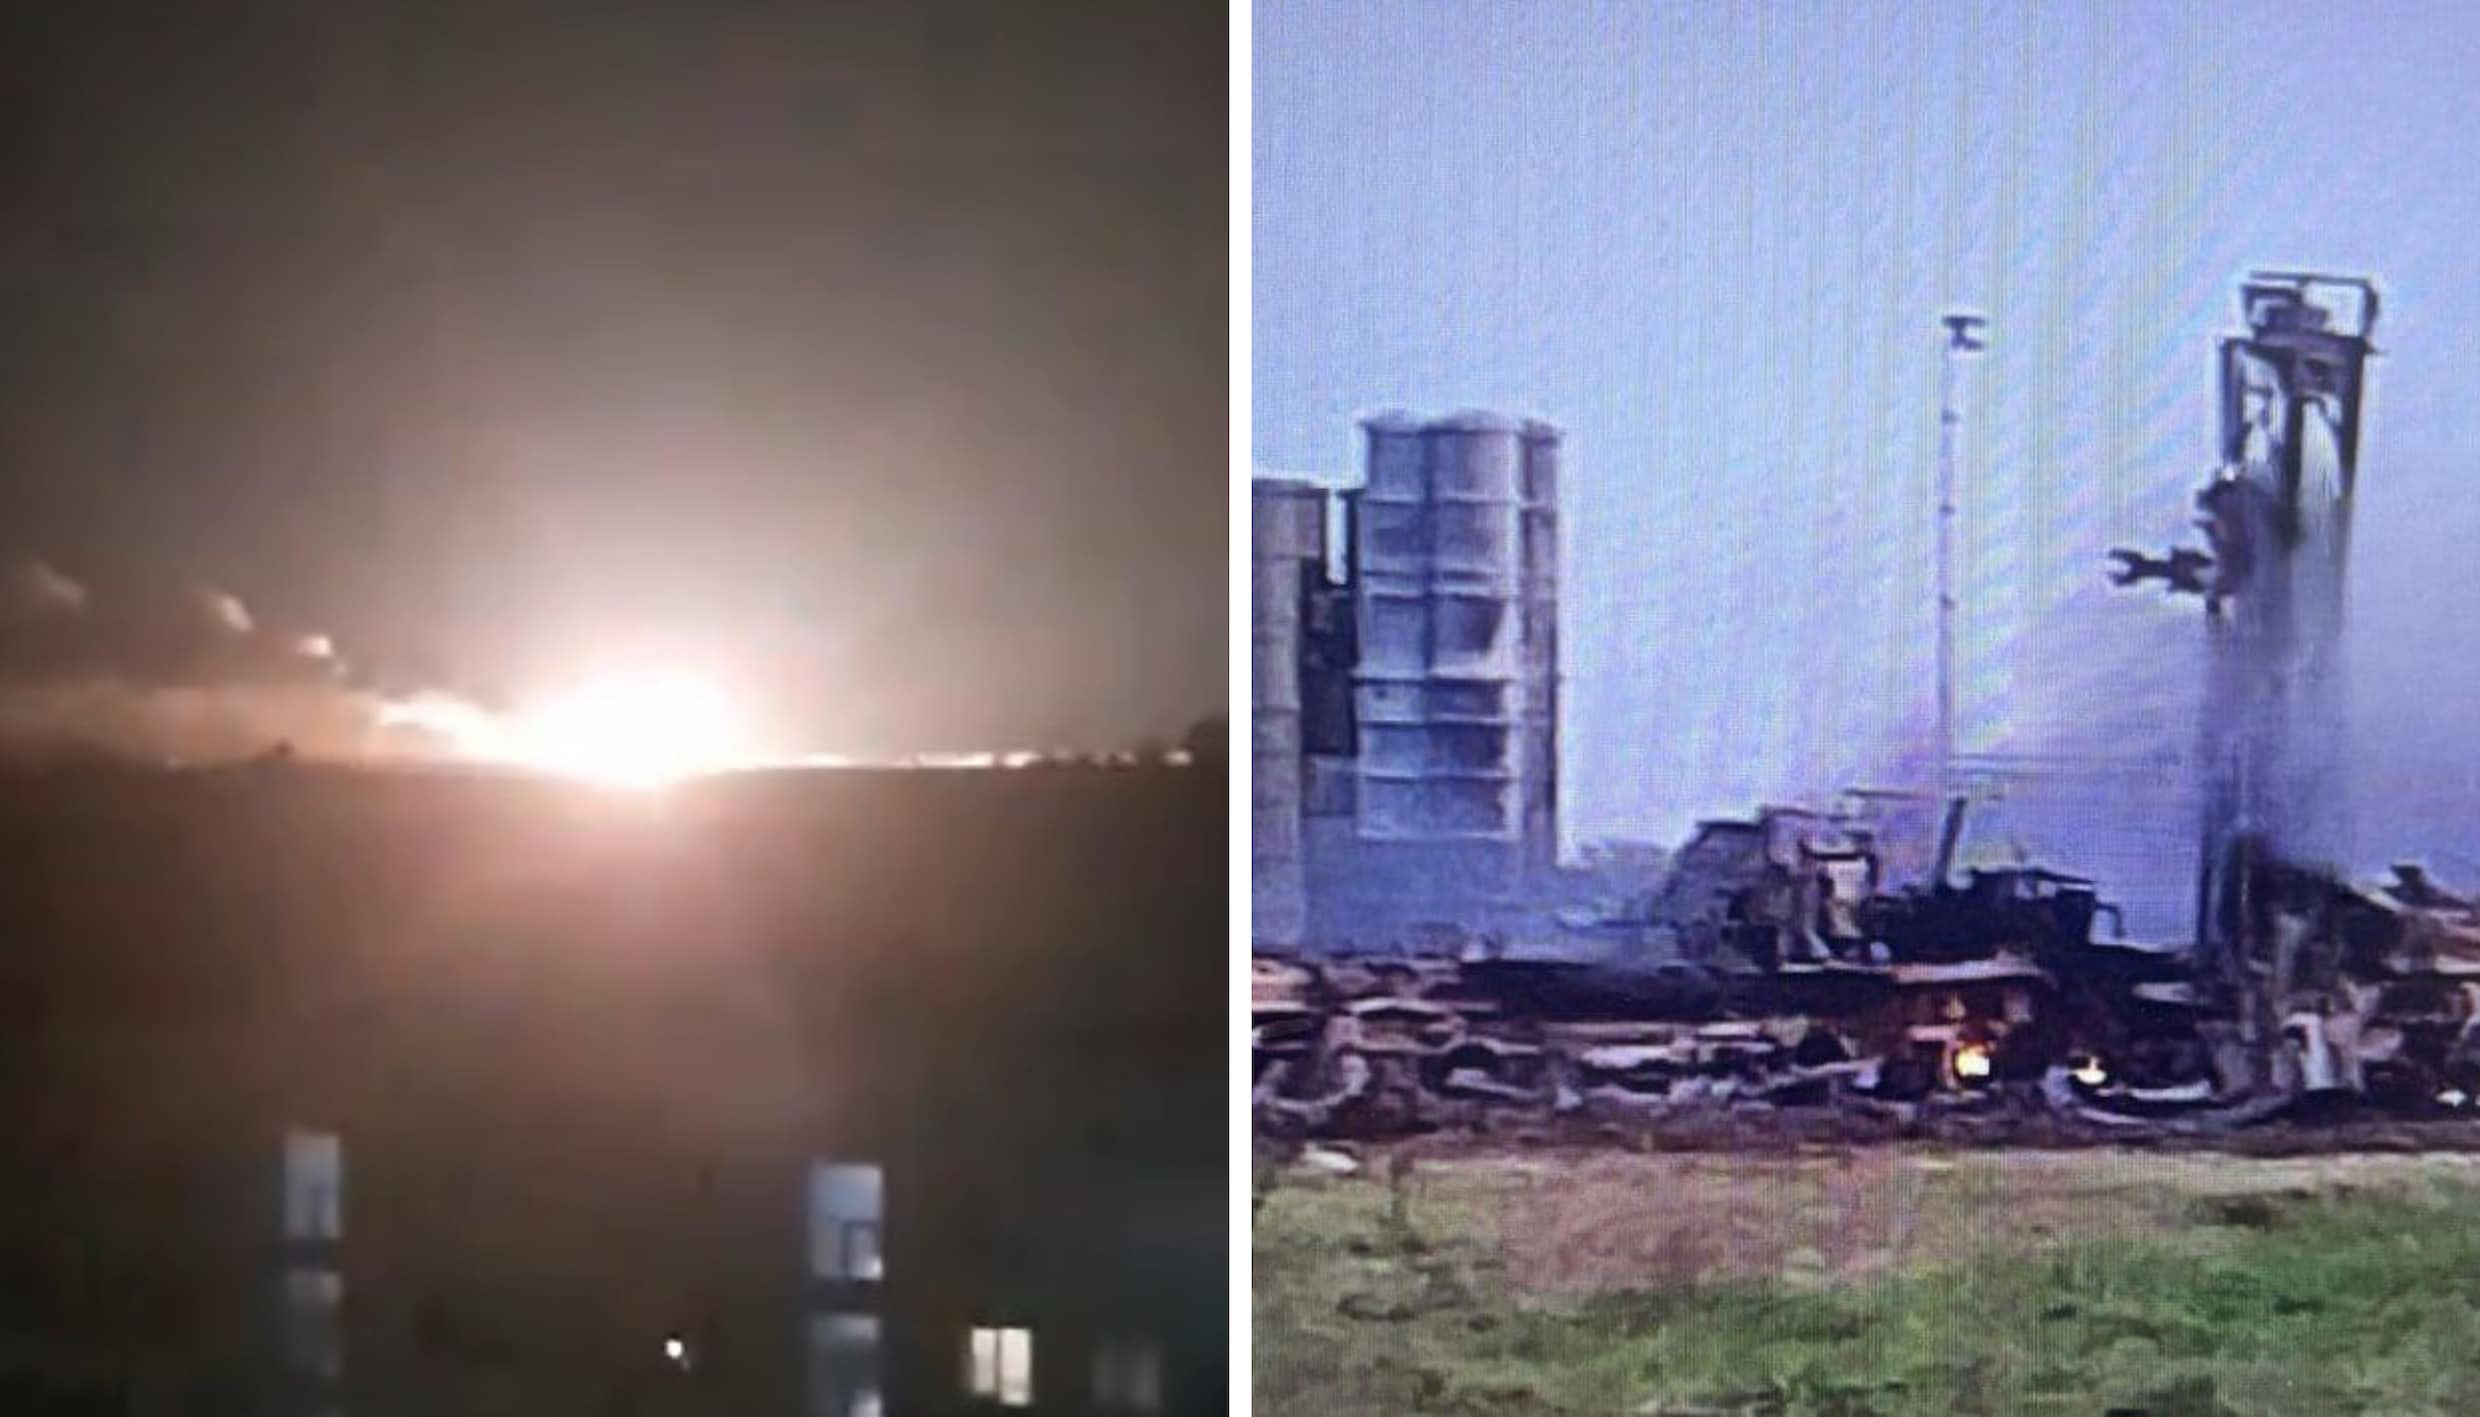 ▶ Raketaanval op Russische luchtmachtbasis op Krim: ‘30 soldaten omgekomen’